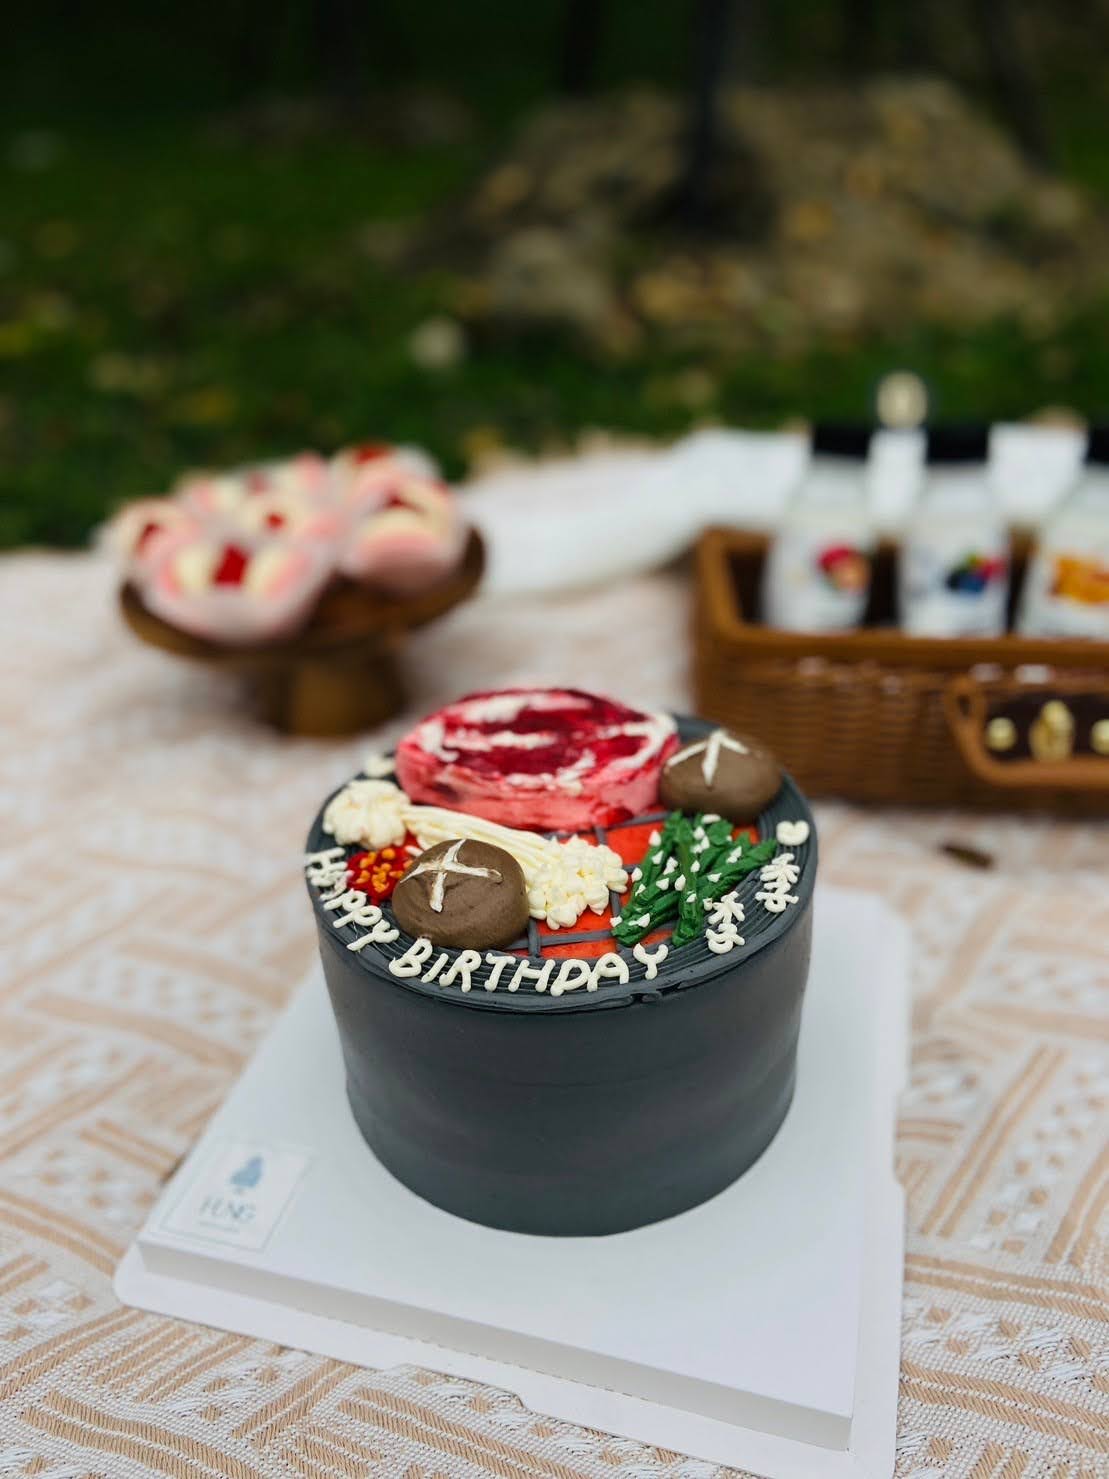 馬卡龍禮盒推薦, 台北生日蛋糕、IG網美人氣客製化蛋糕哪裡買、草莓季